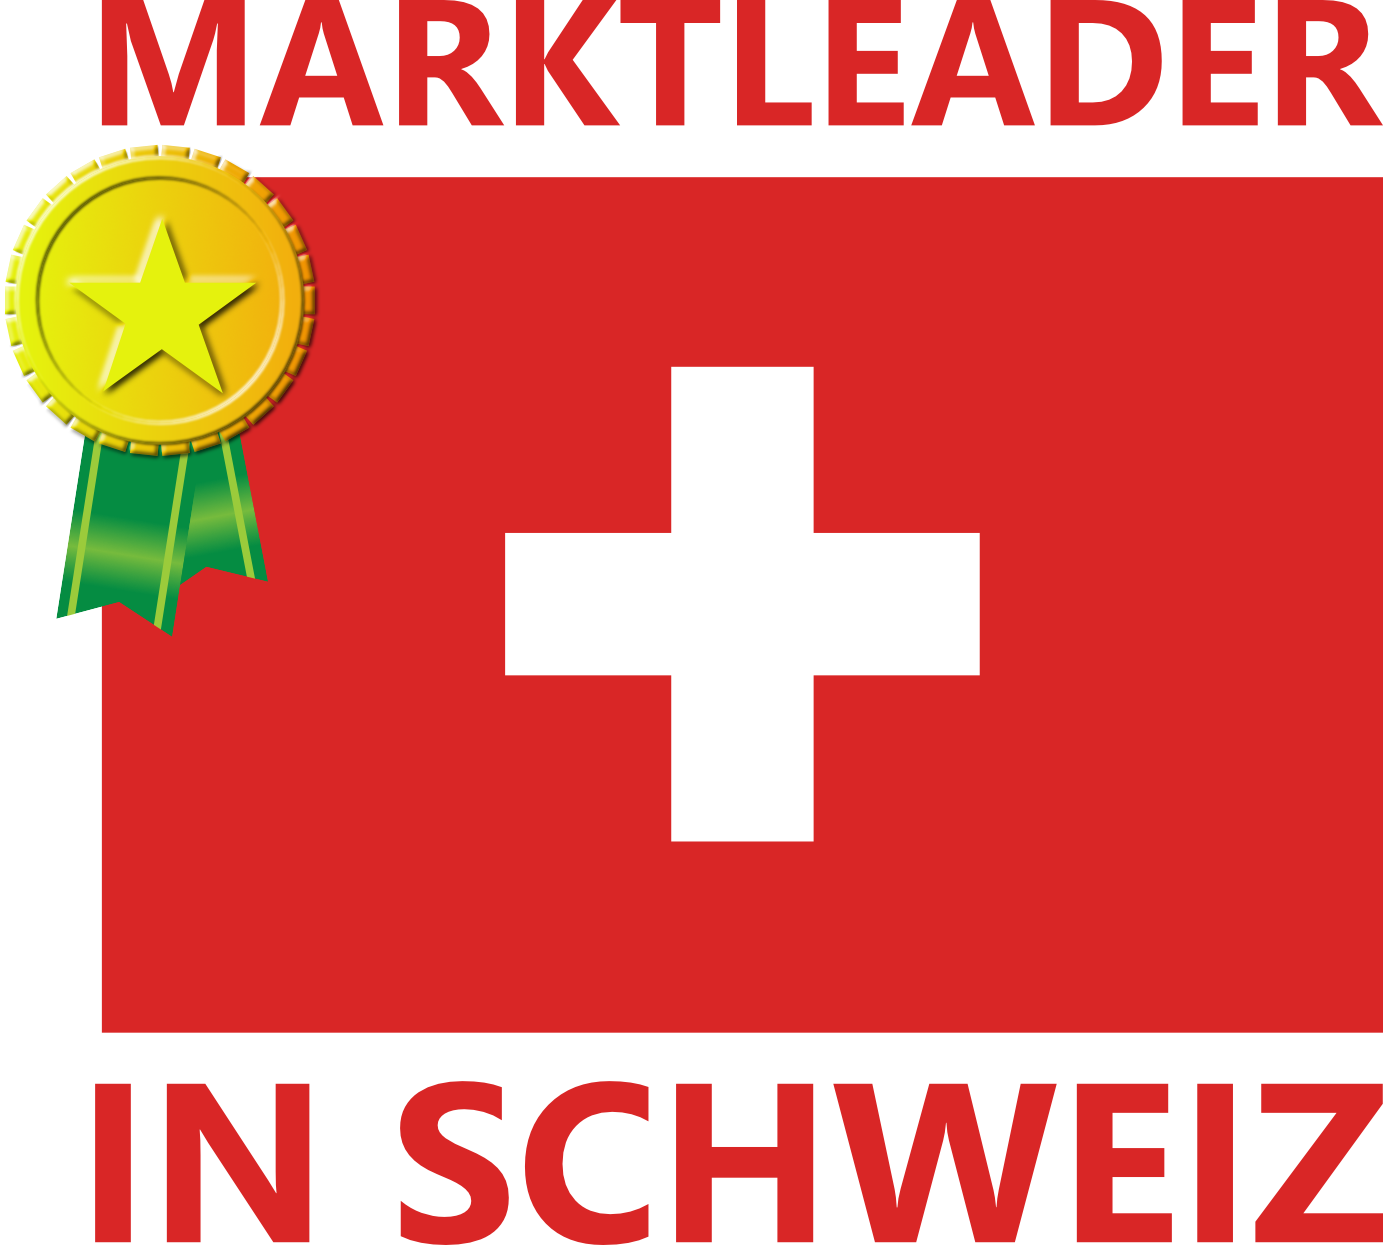 schweiz_marktleader_02-1-1-1-1.png